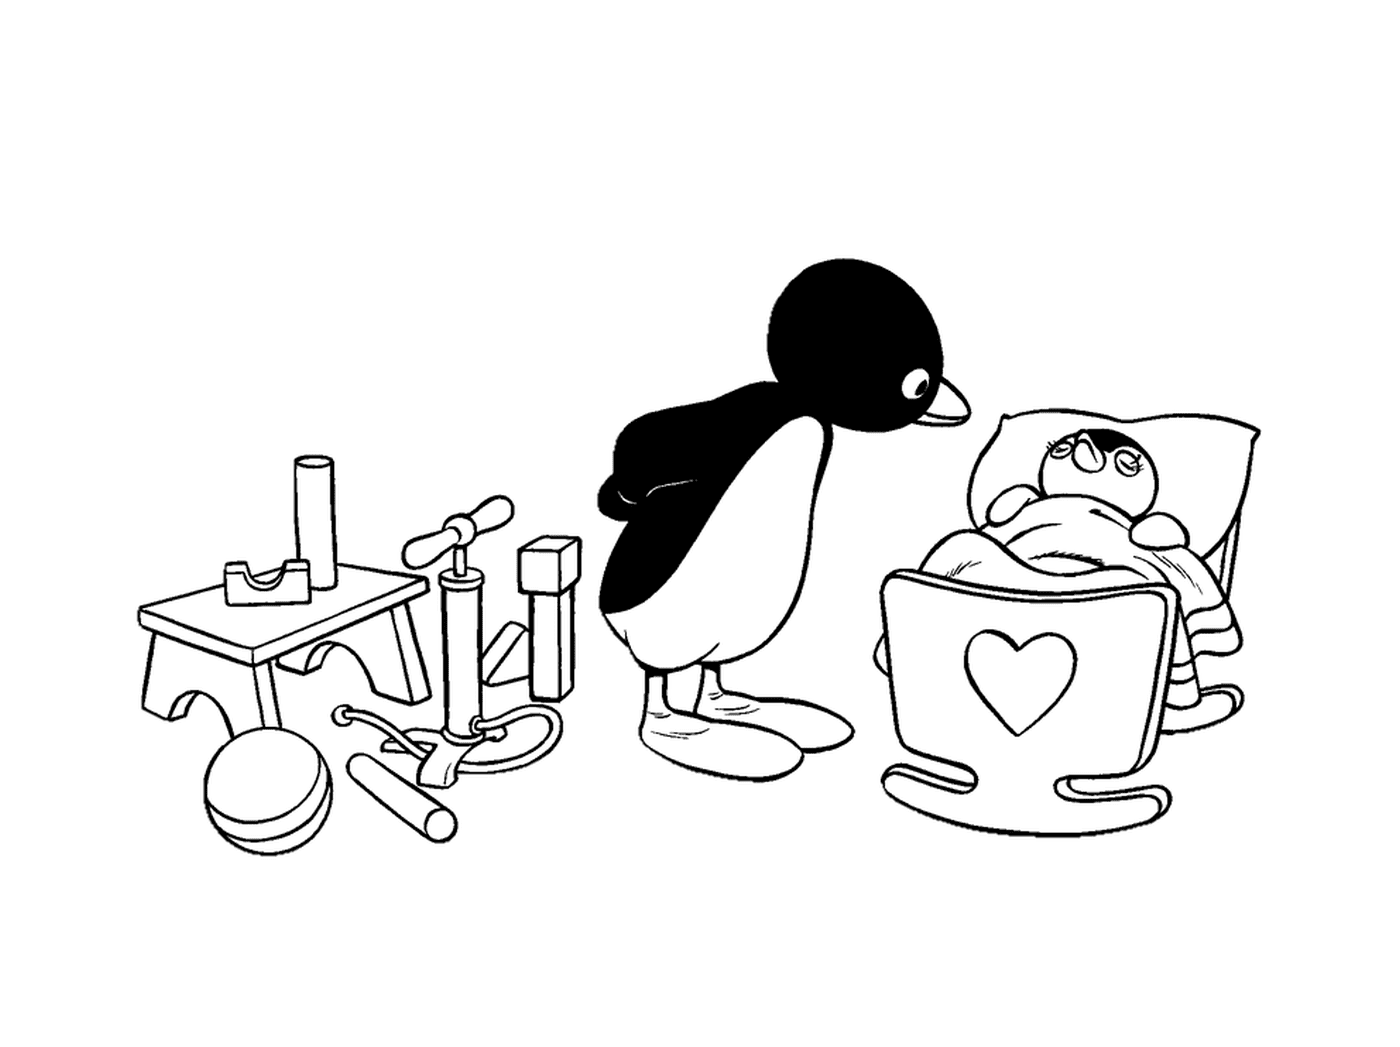  Pinguino e pinguino bambino in una ciotola 